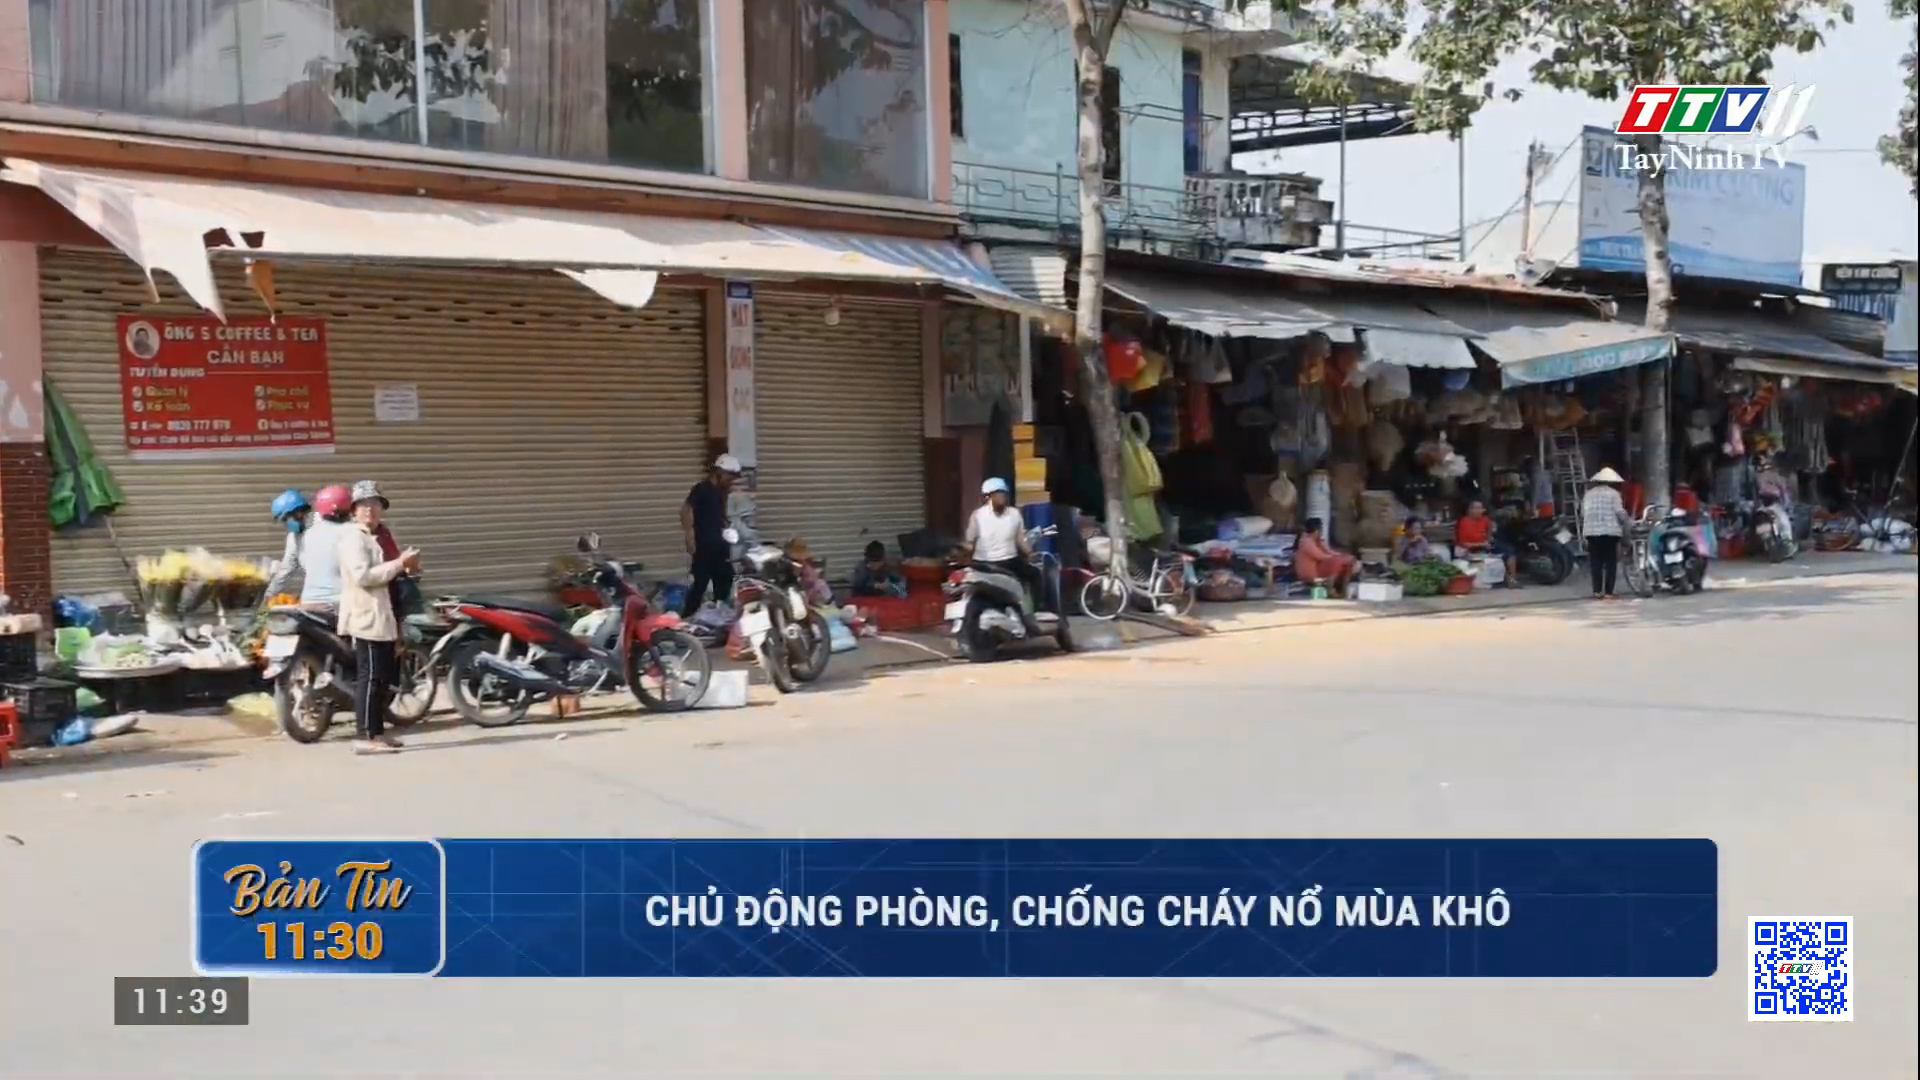 Chủ động phòng, chống cháy nổ mùa khô | TayNinhTV